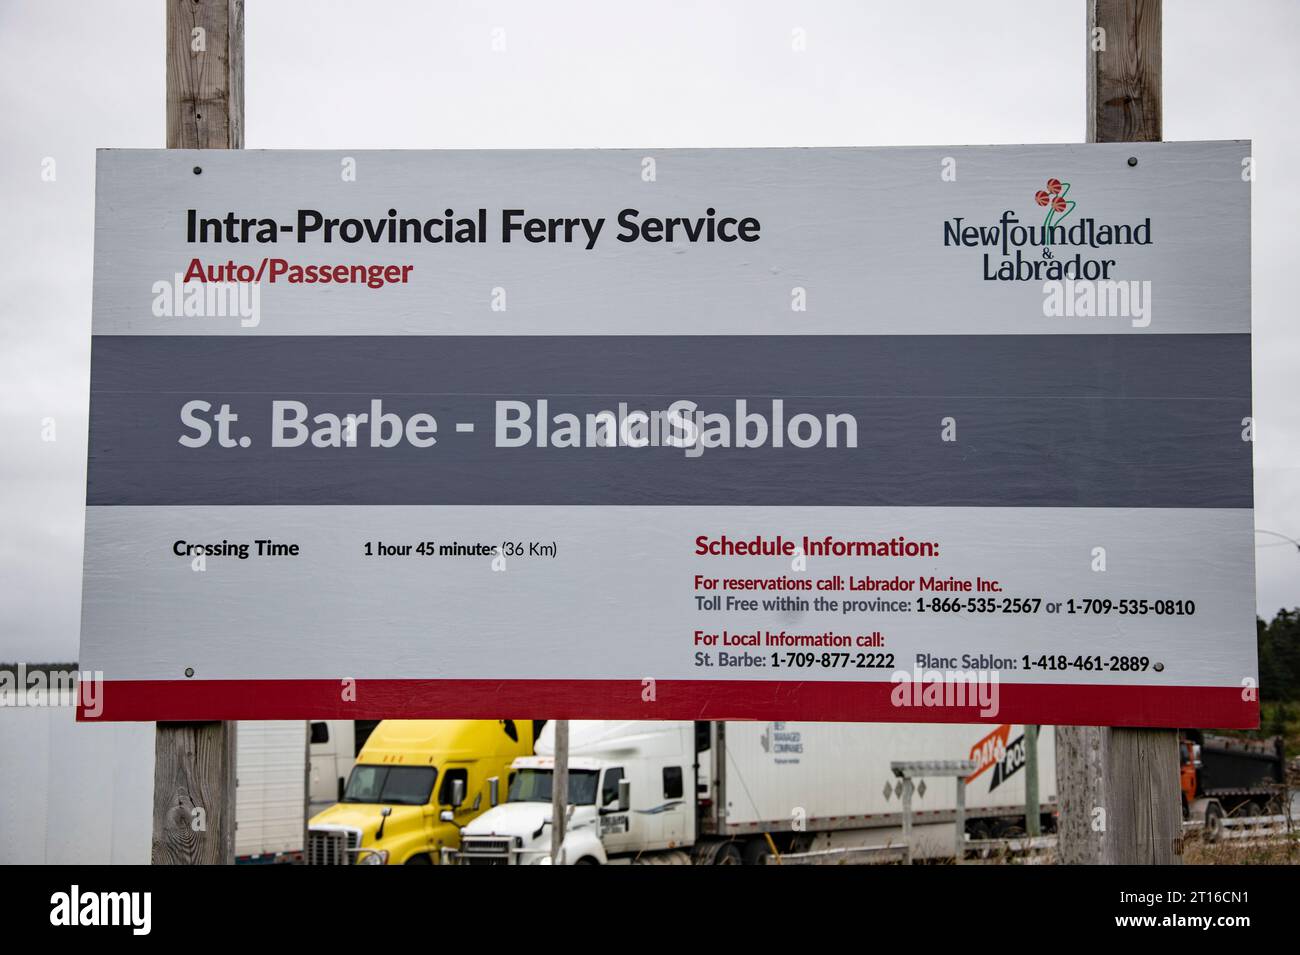 Traghetto intra-provinciale per Quebec e Labrador da St. Barbe, Newfoundland & Labrador, Canada Foto Stock